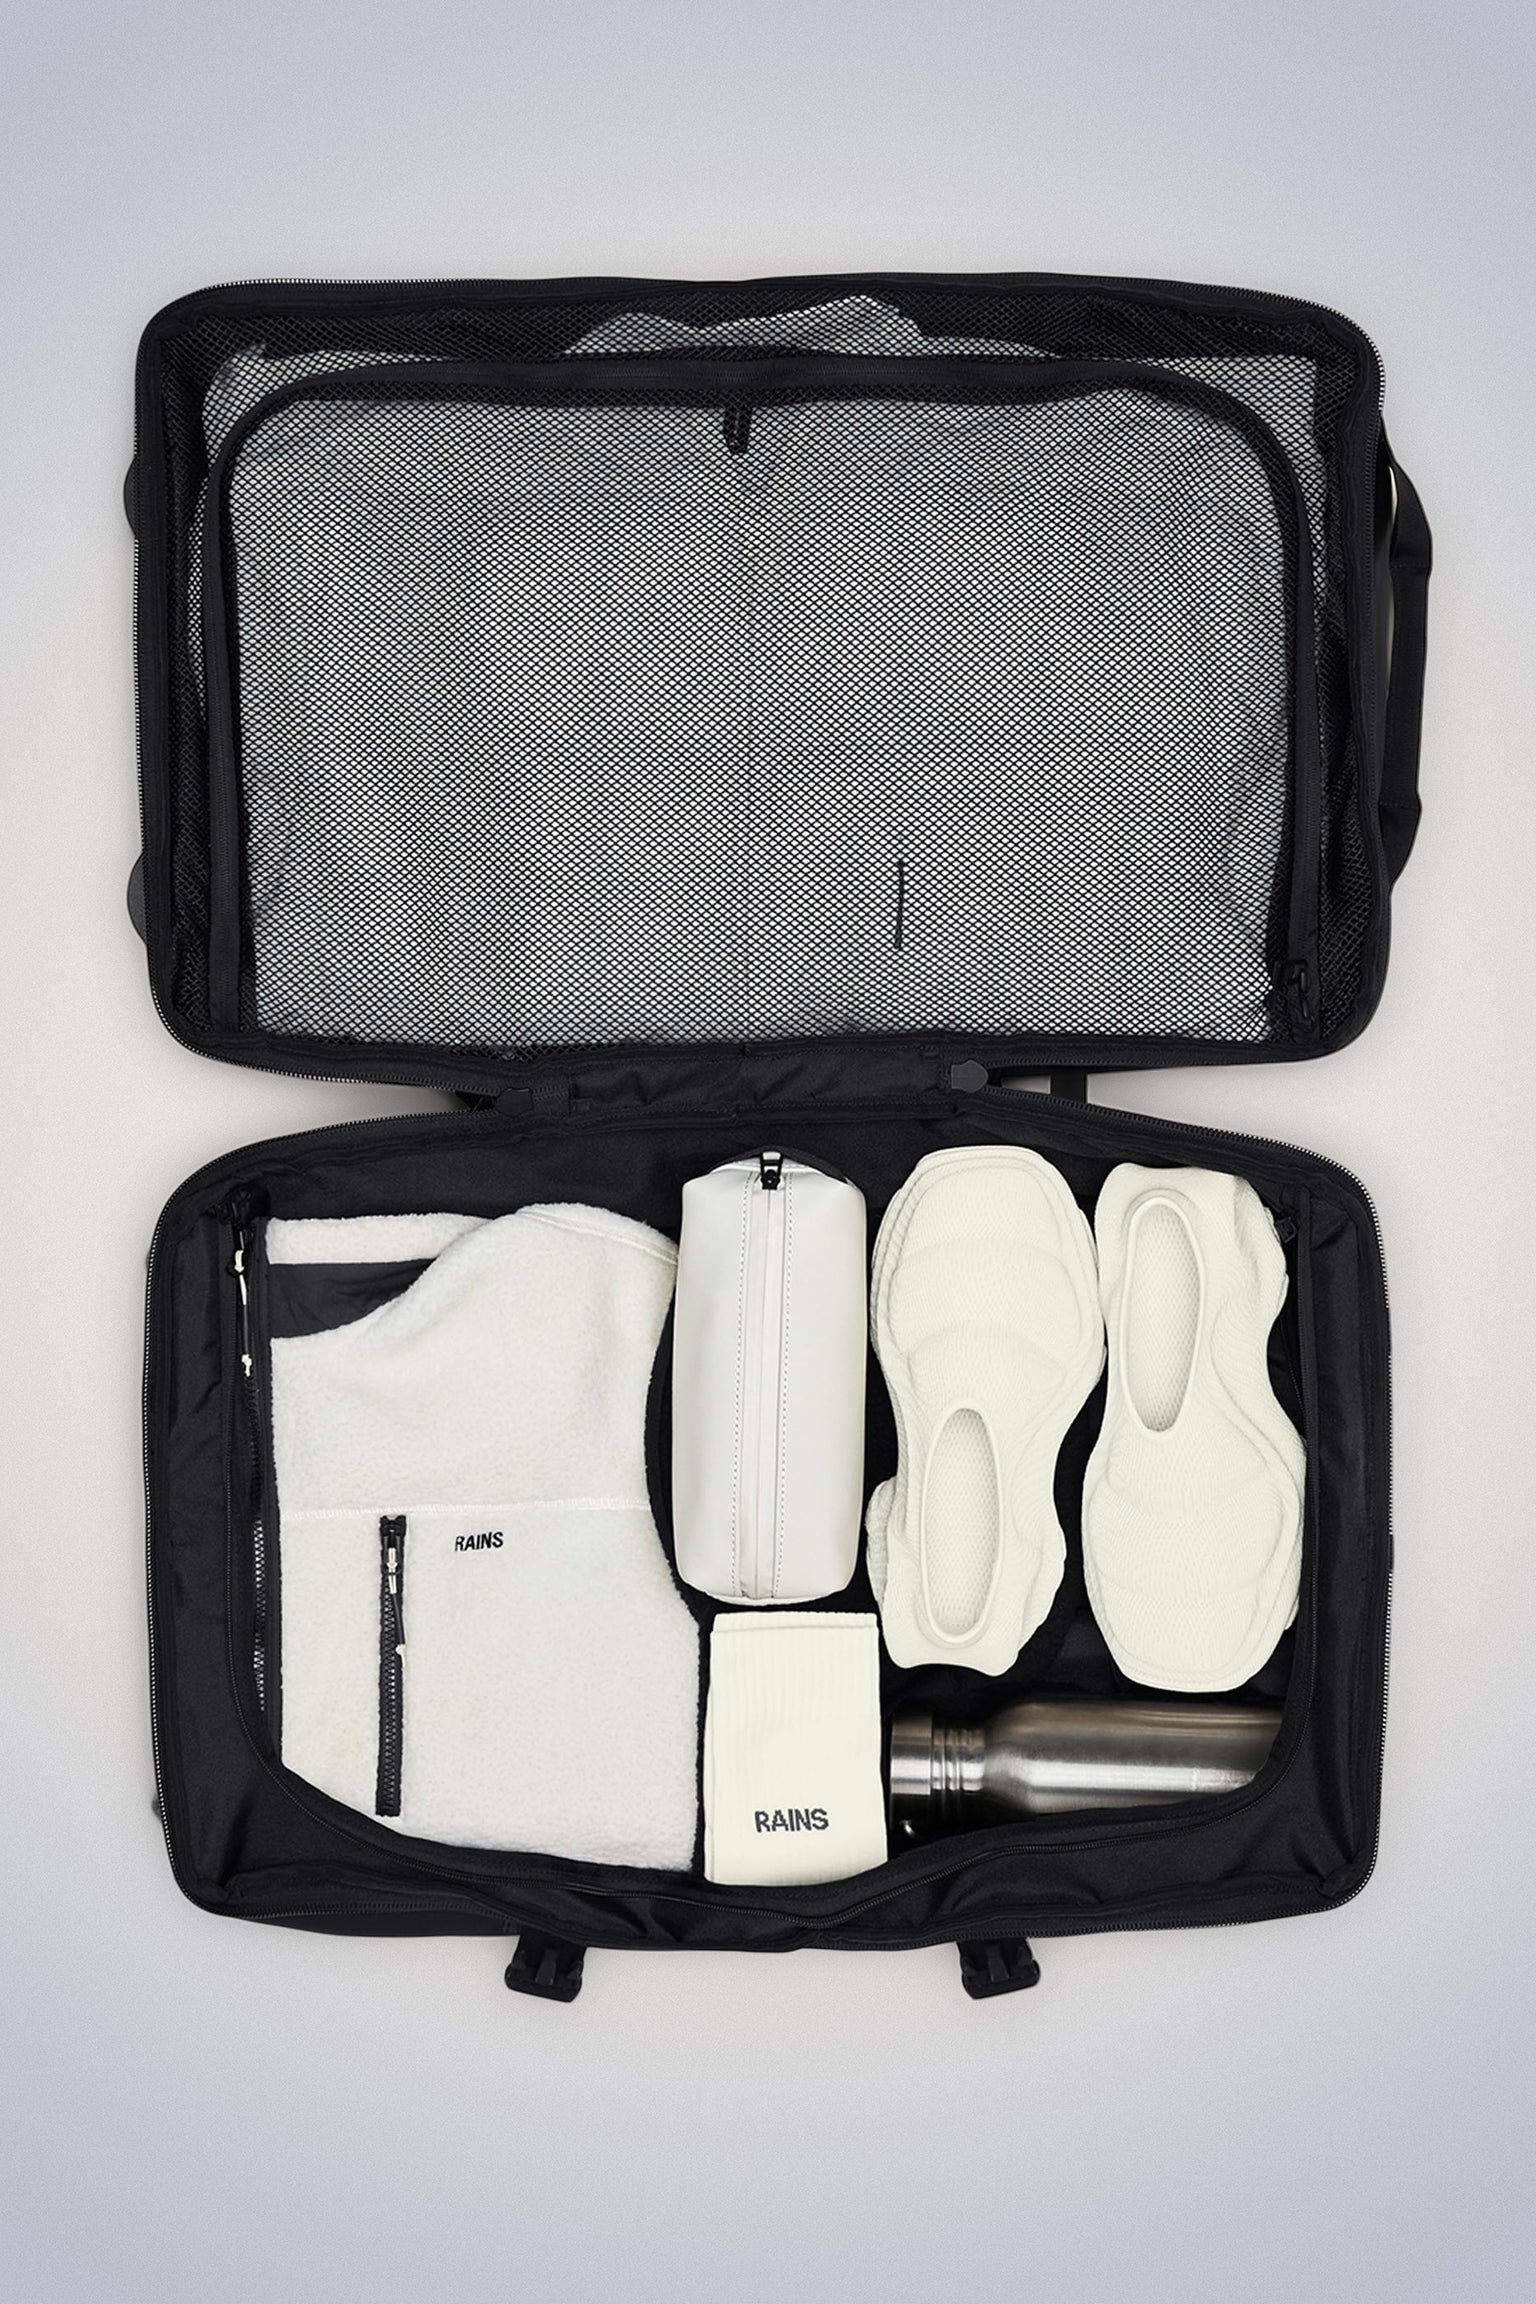 Koffert | Svart | Mellomstørrelse | Vanntett | To hjul | Texel Check-in Bag